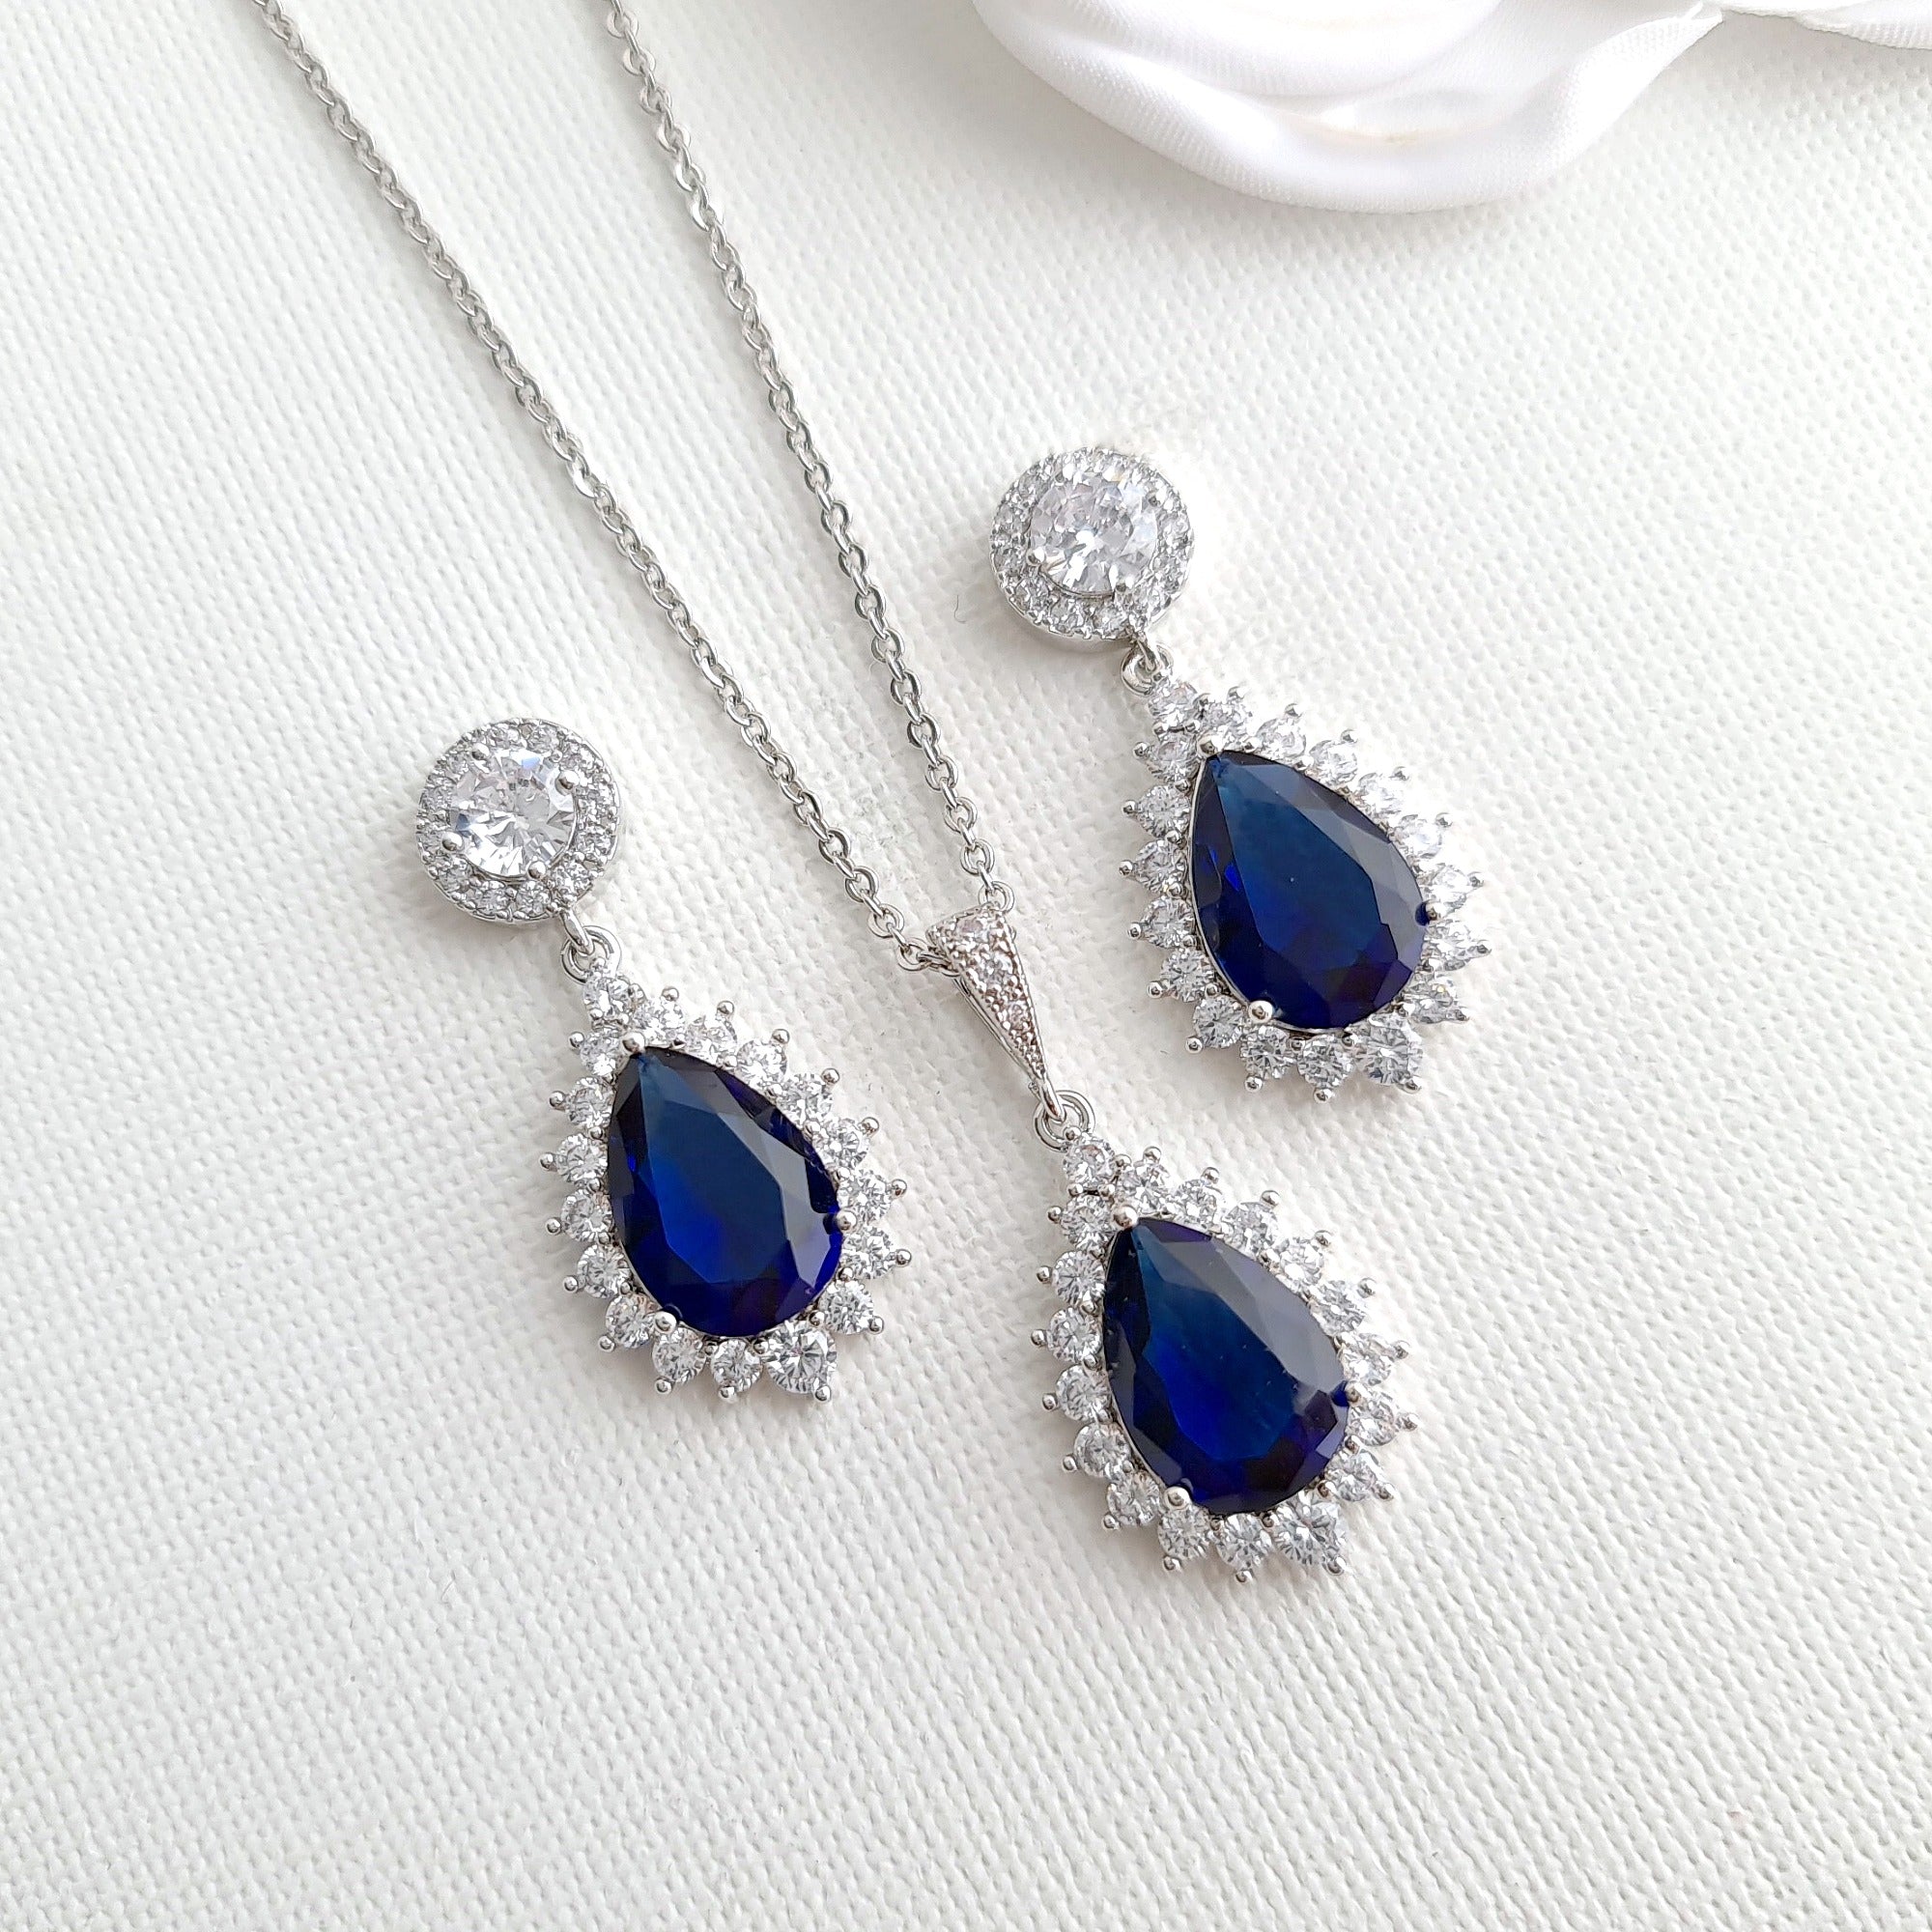 Buy NAVY BLUE EARRINGS, Vintage Dark Blue Earrings, Crystal Earrings,  Mother of the Groom Bride Jewelry, Rhinestone Cluster Earrings Online in  India - Etsy